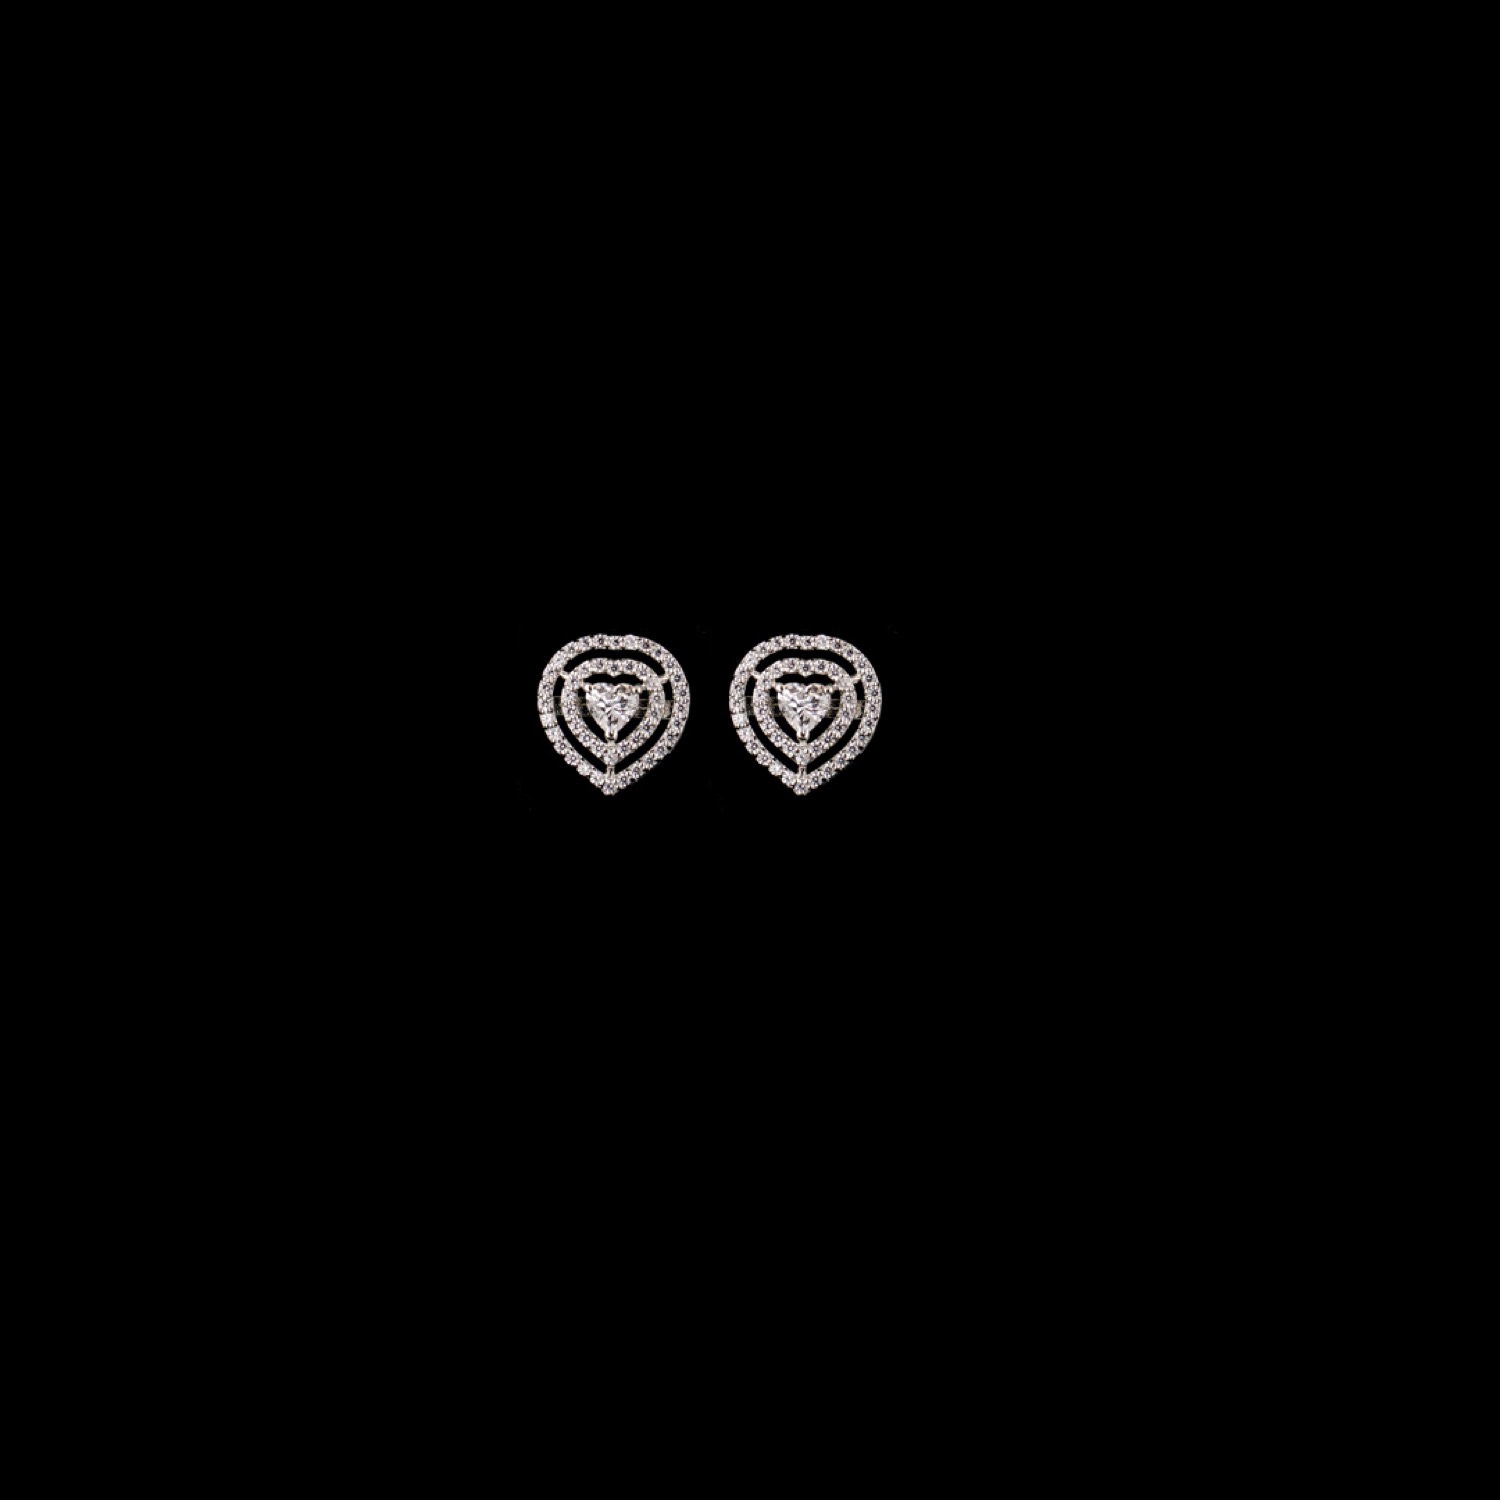 varam_earrings_102022_double_layer_heart_shaped_silver_earrings-1